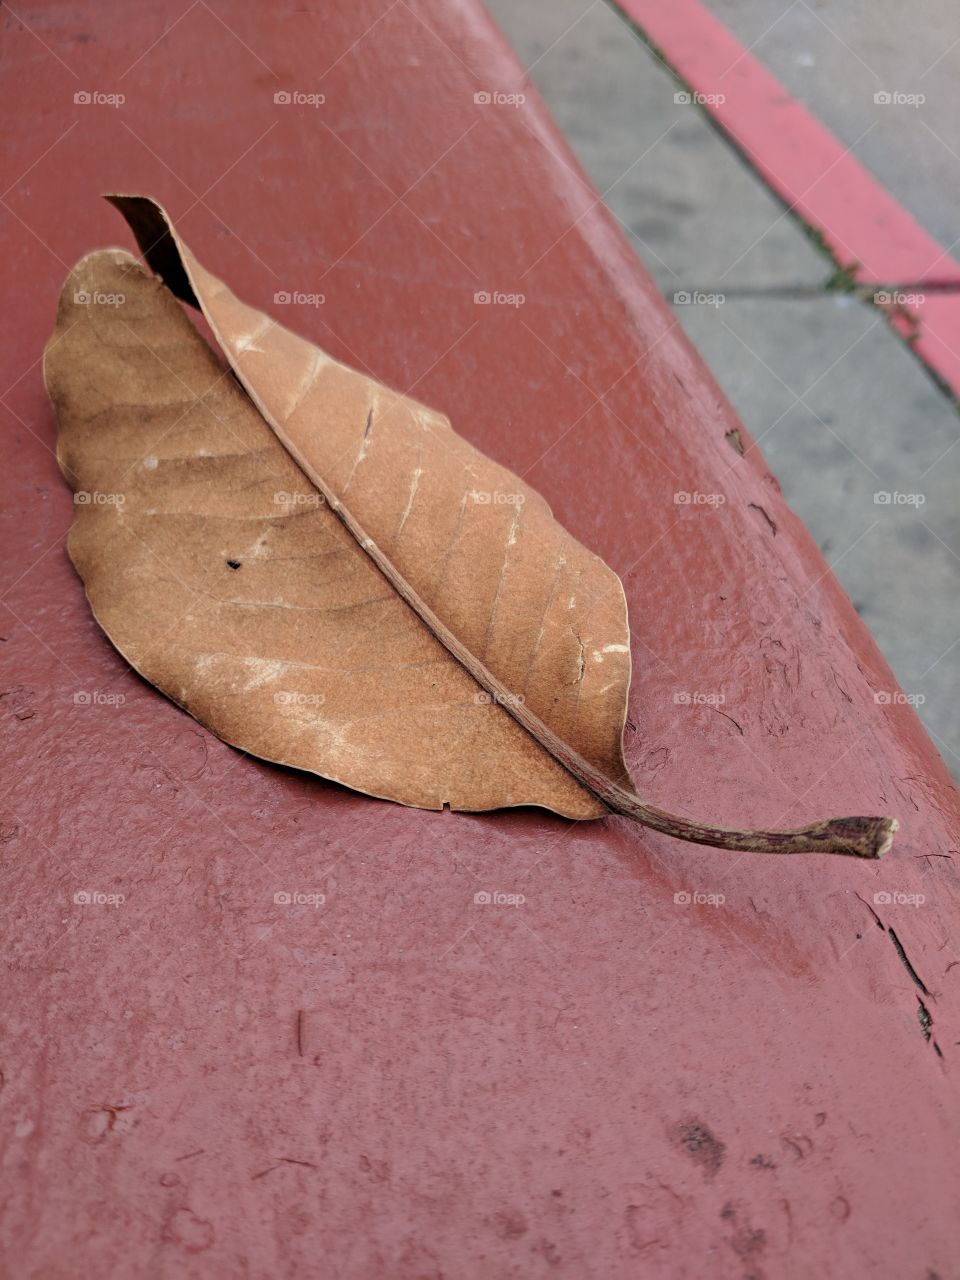 leaf on bench